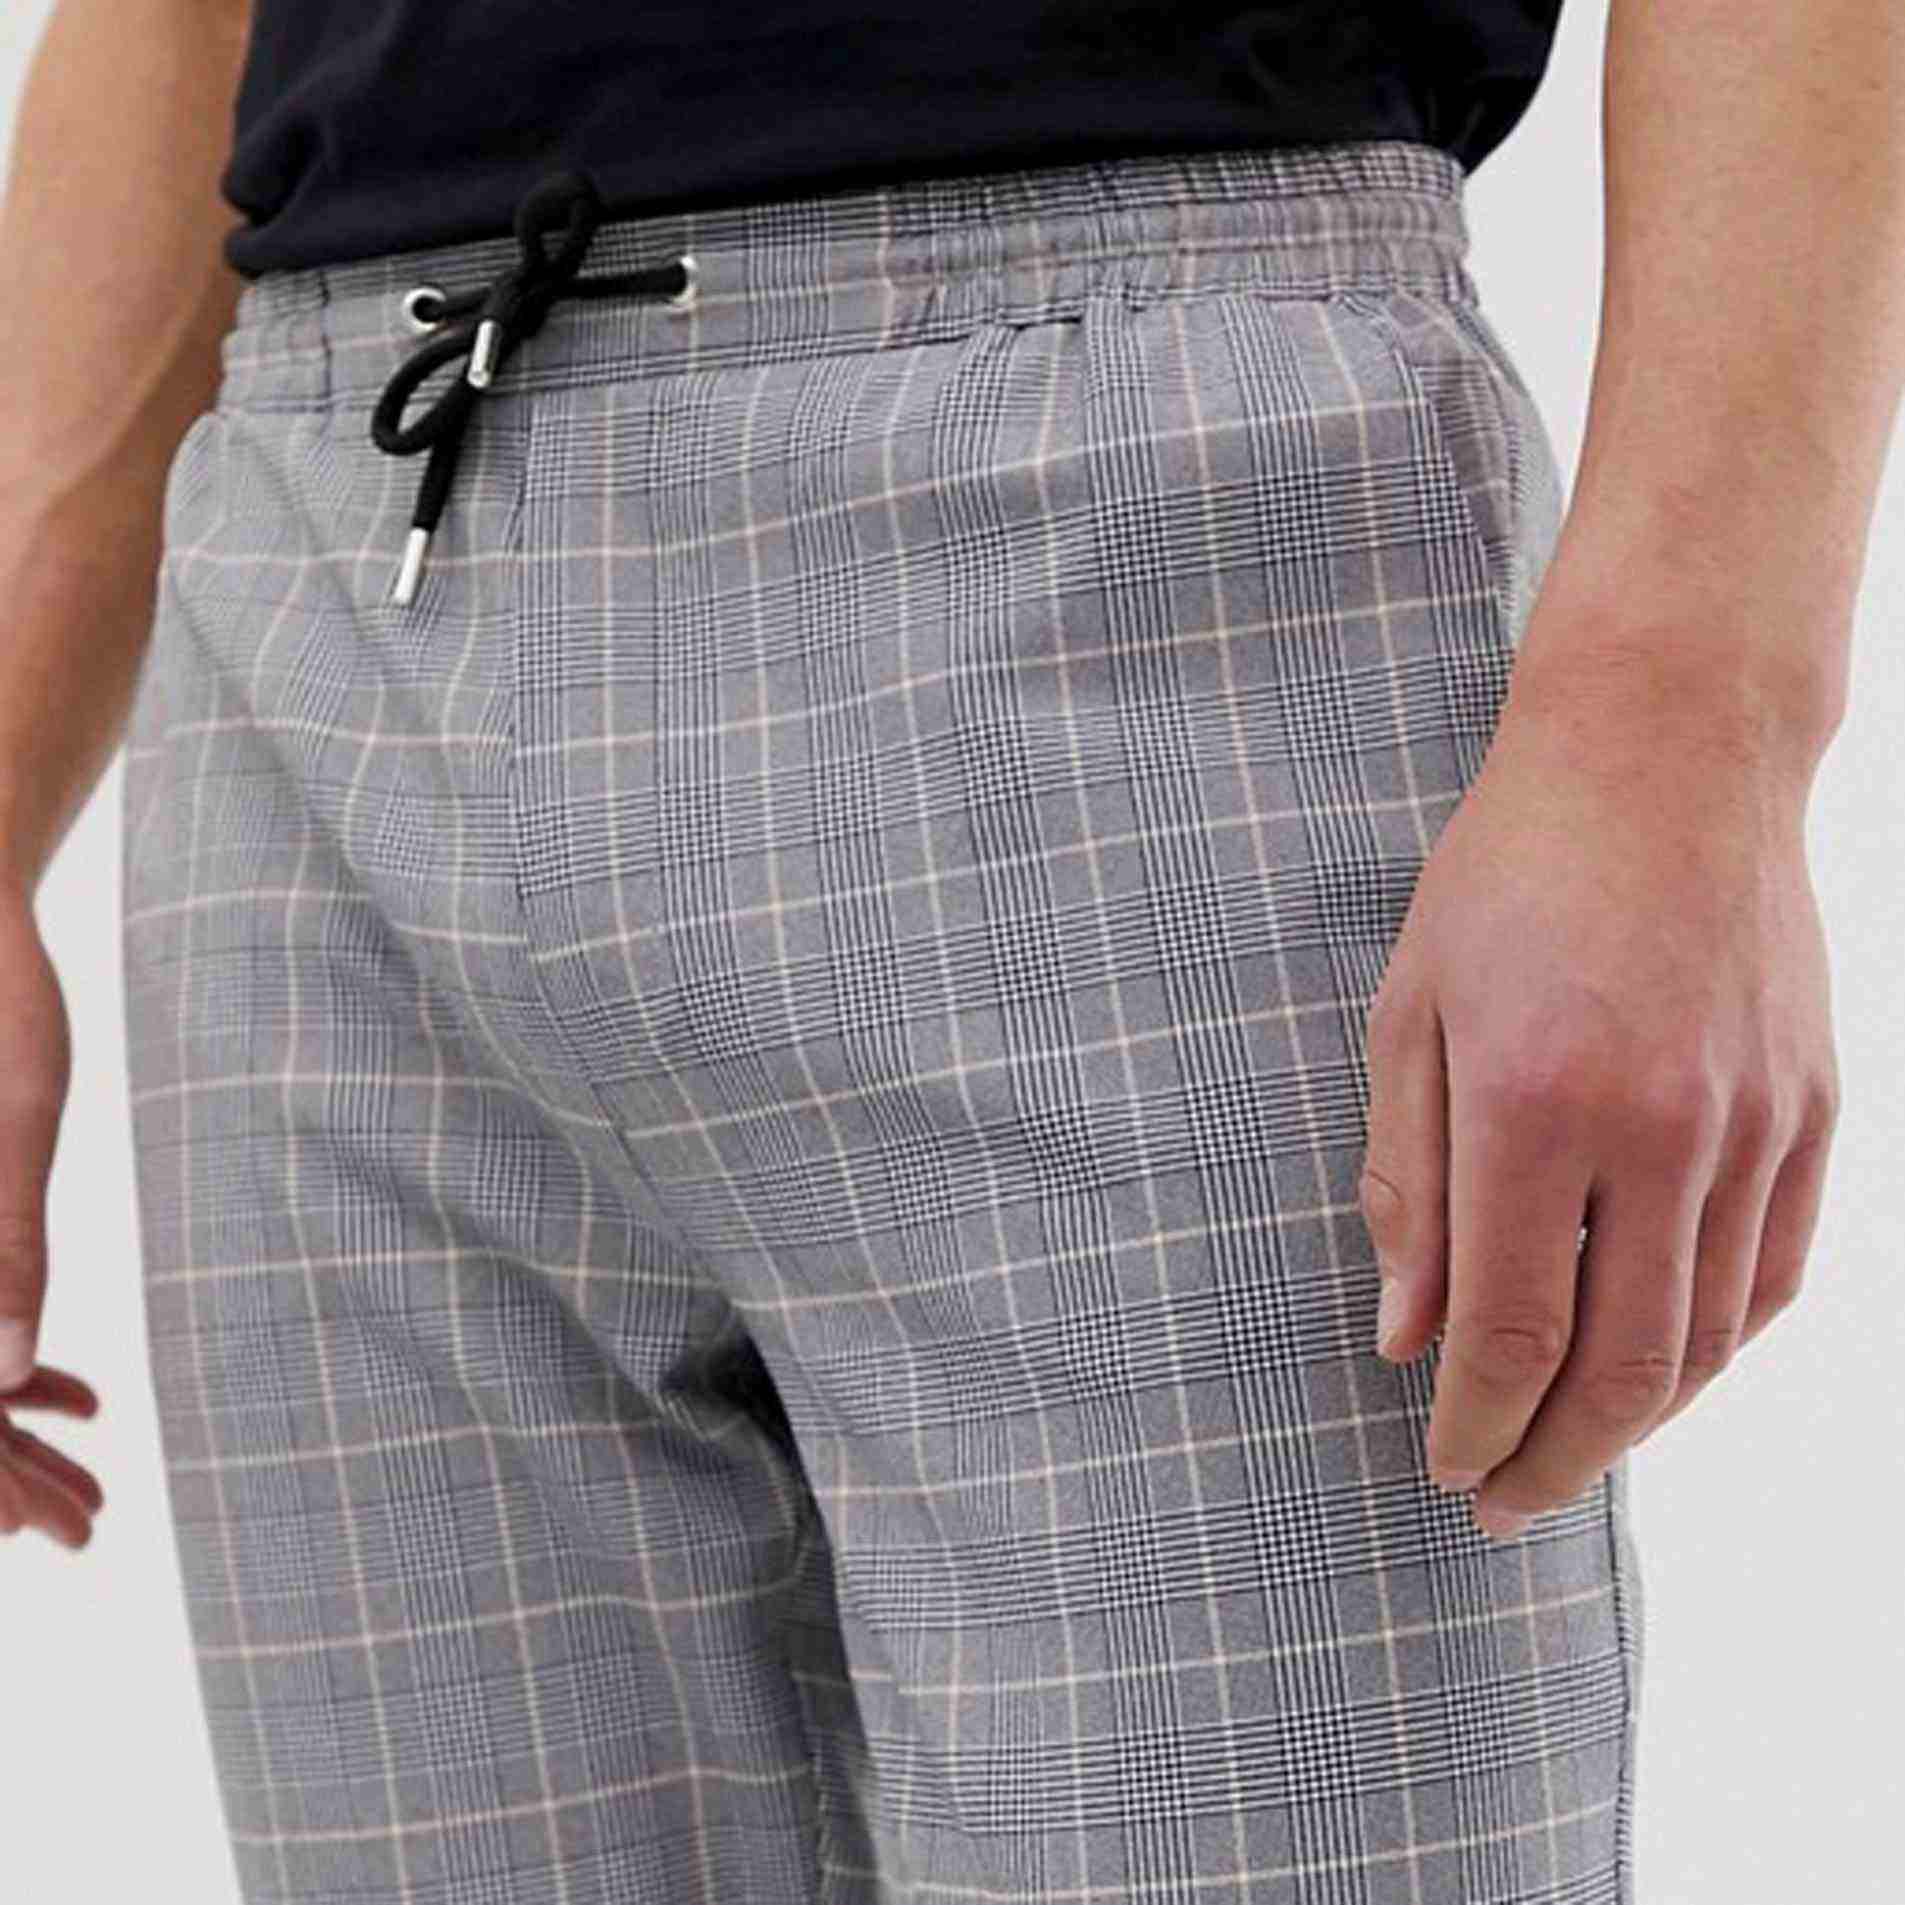 Men Fashion Woven Grey Plaid Check Cropped Trousers Pants